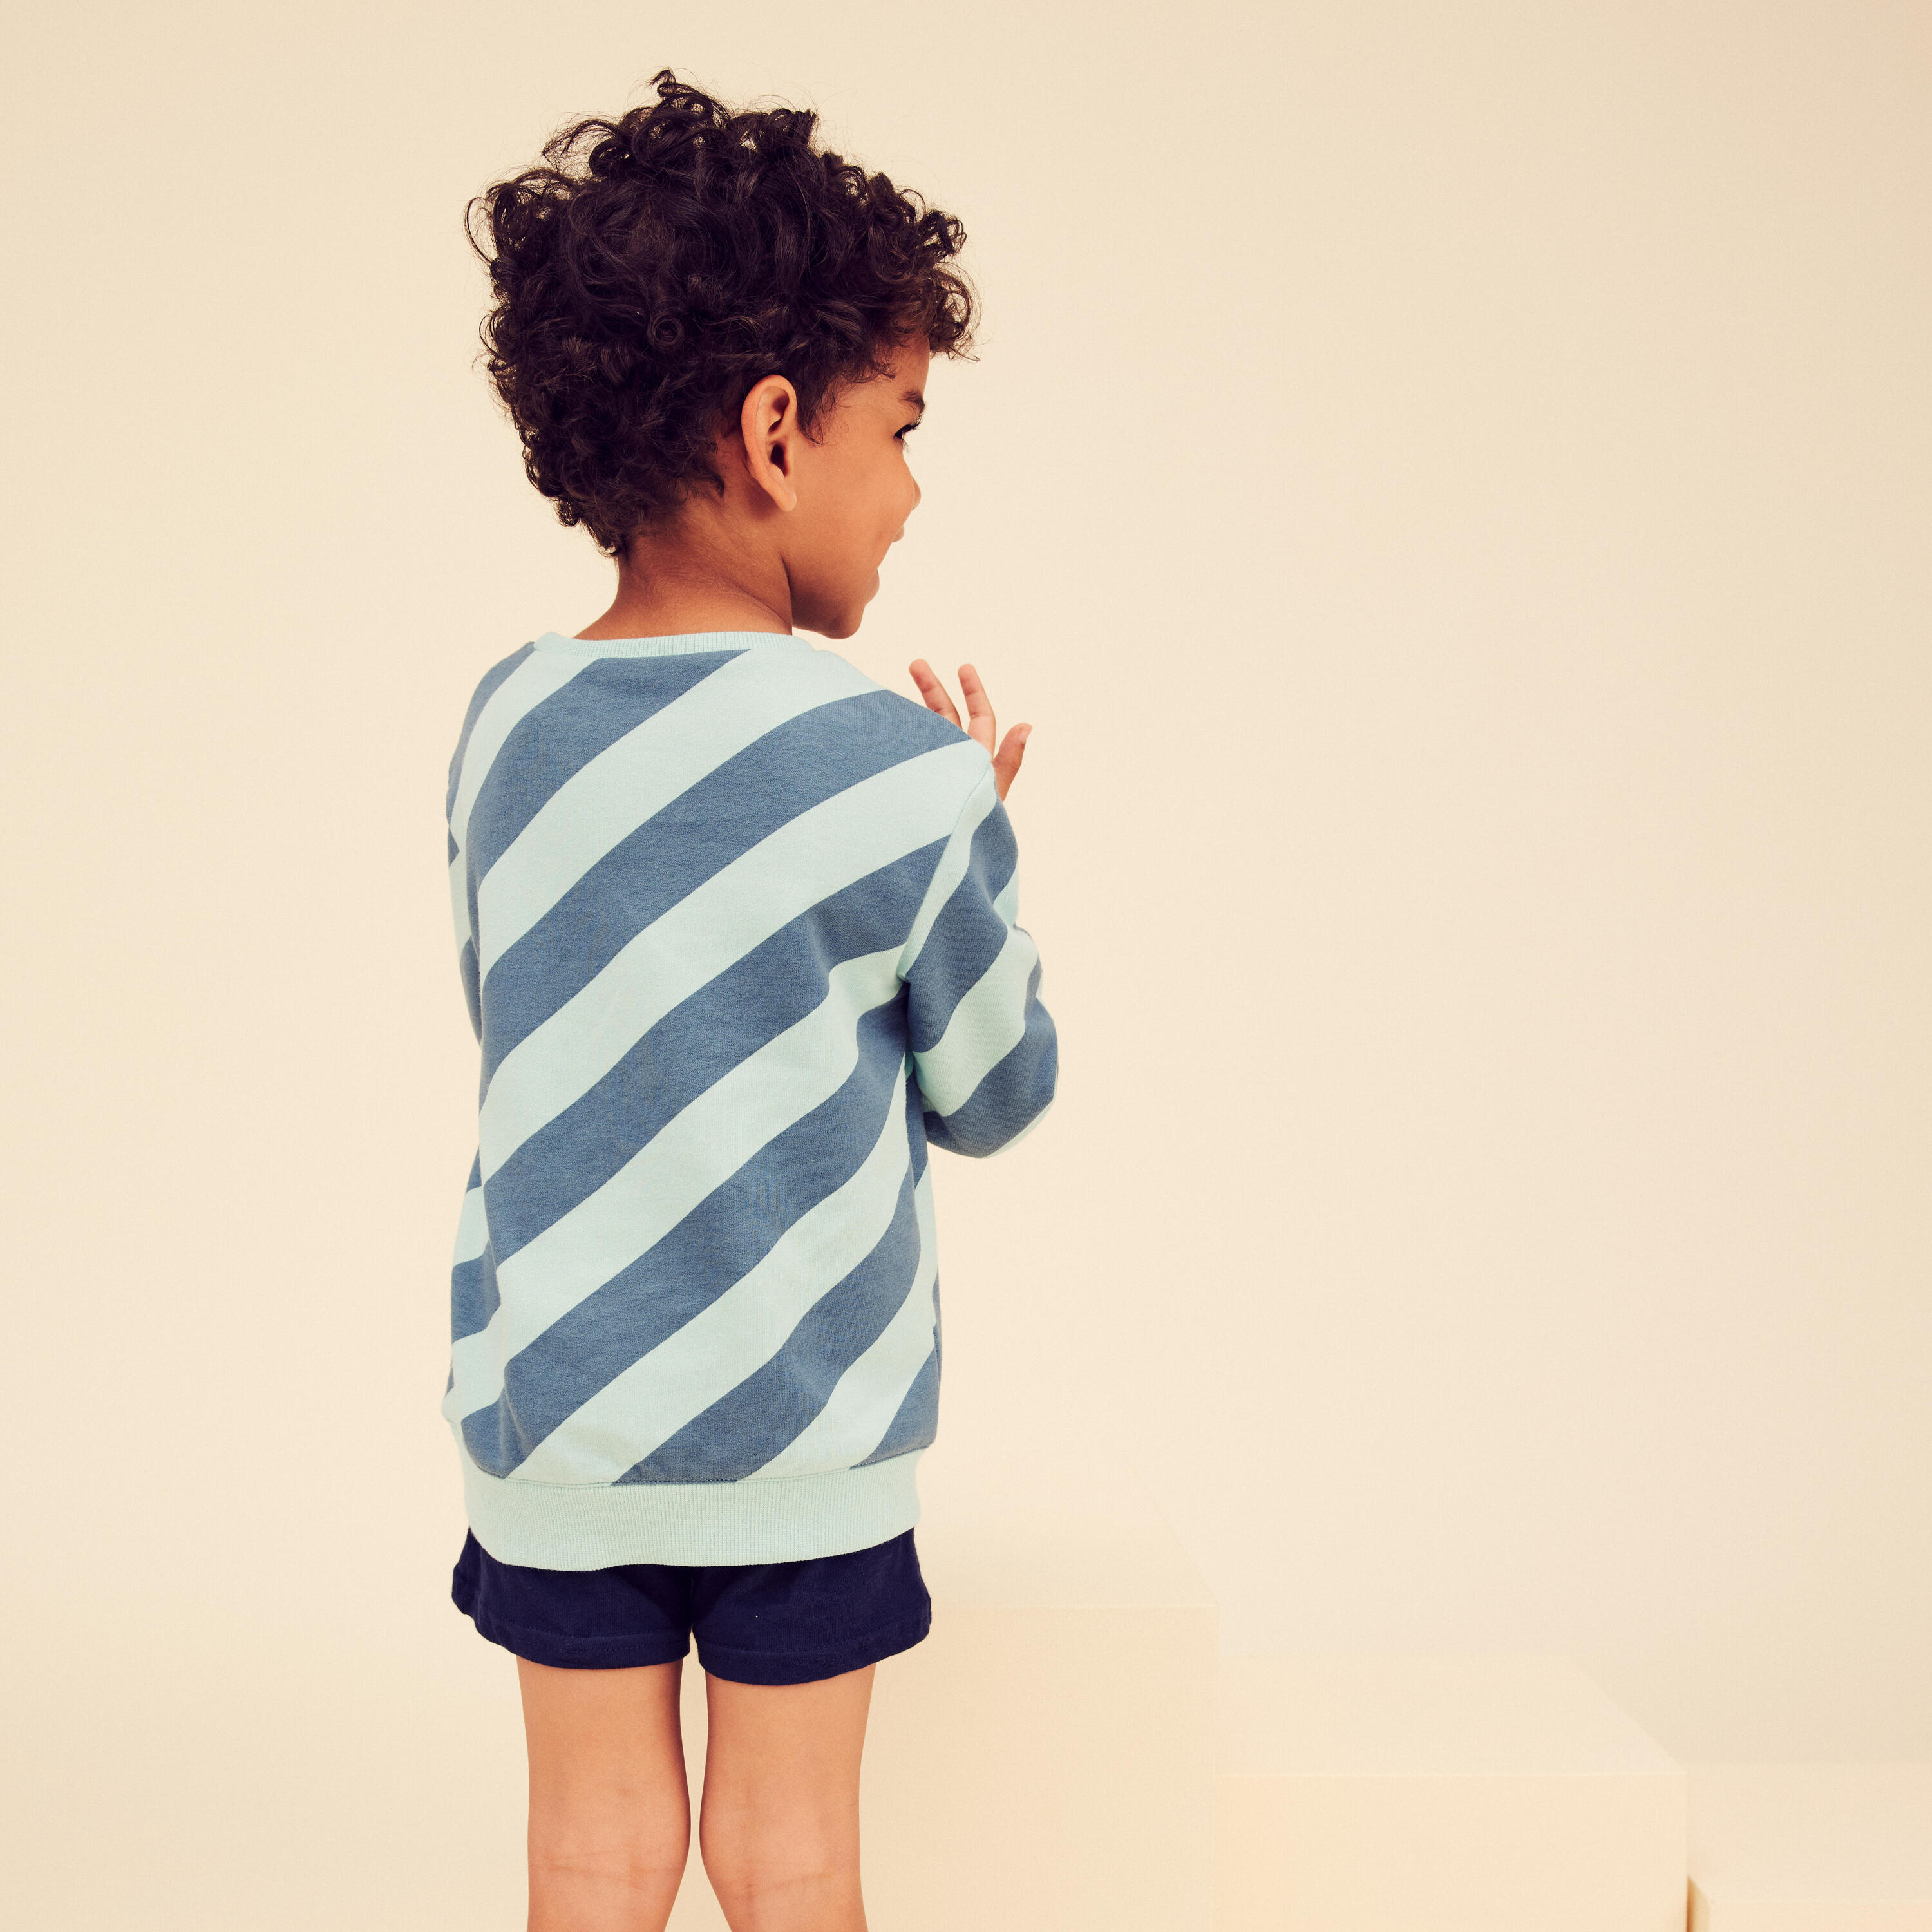 Kids' Basic Sweatshirt - Blue/Turquoise Stripes 3/5